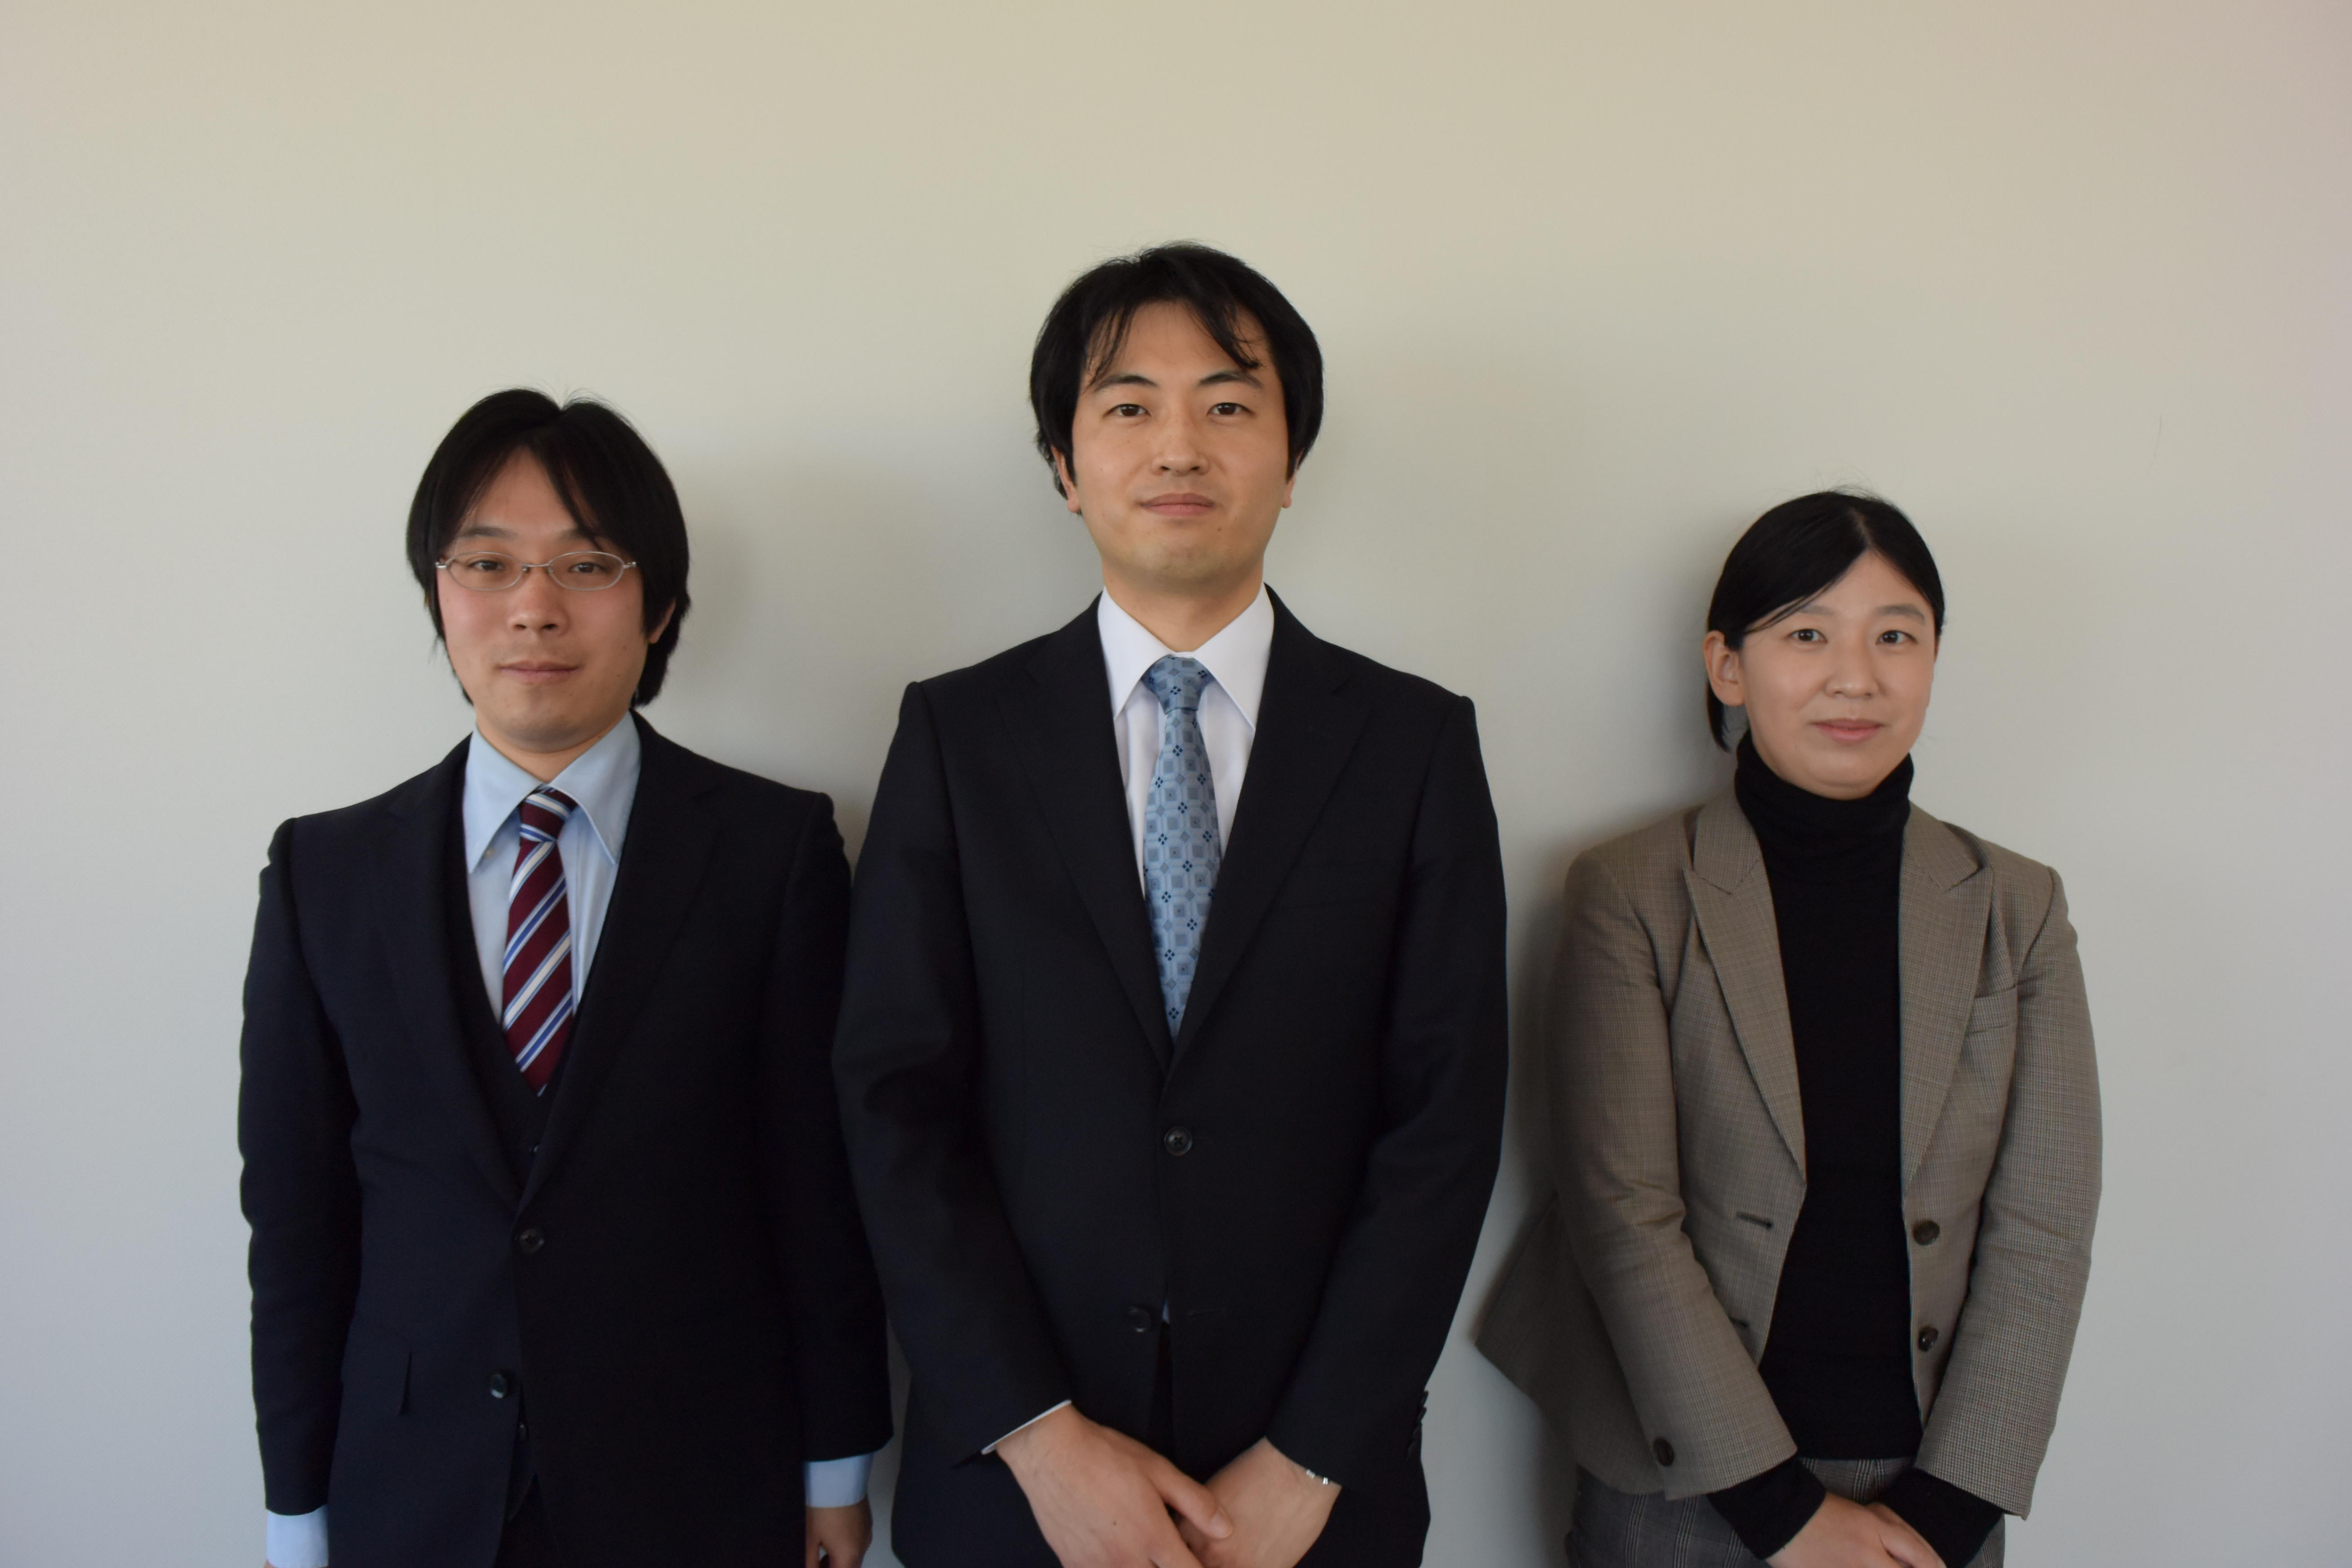 江戸川大学情報教育研究所の教員が私立大学情報教育協会の「情報活用教育コンソーシアム」運営小委員会委員に就任